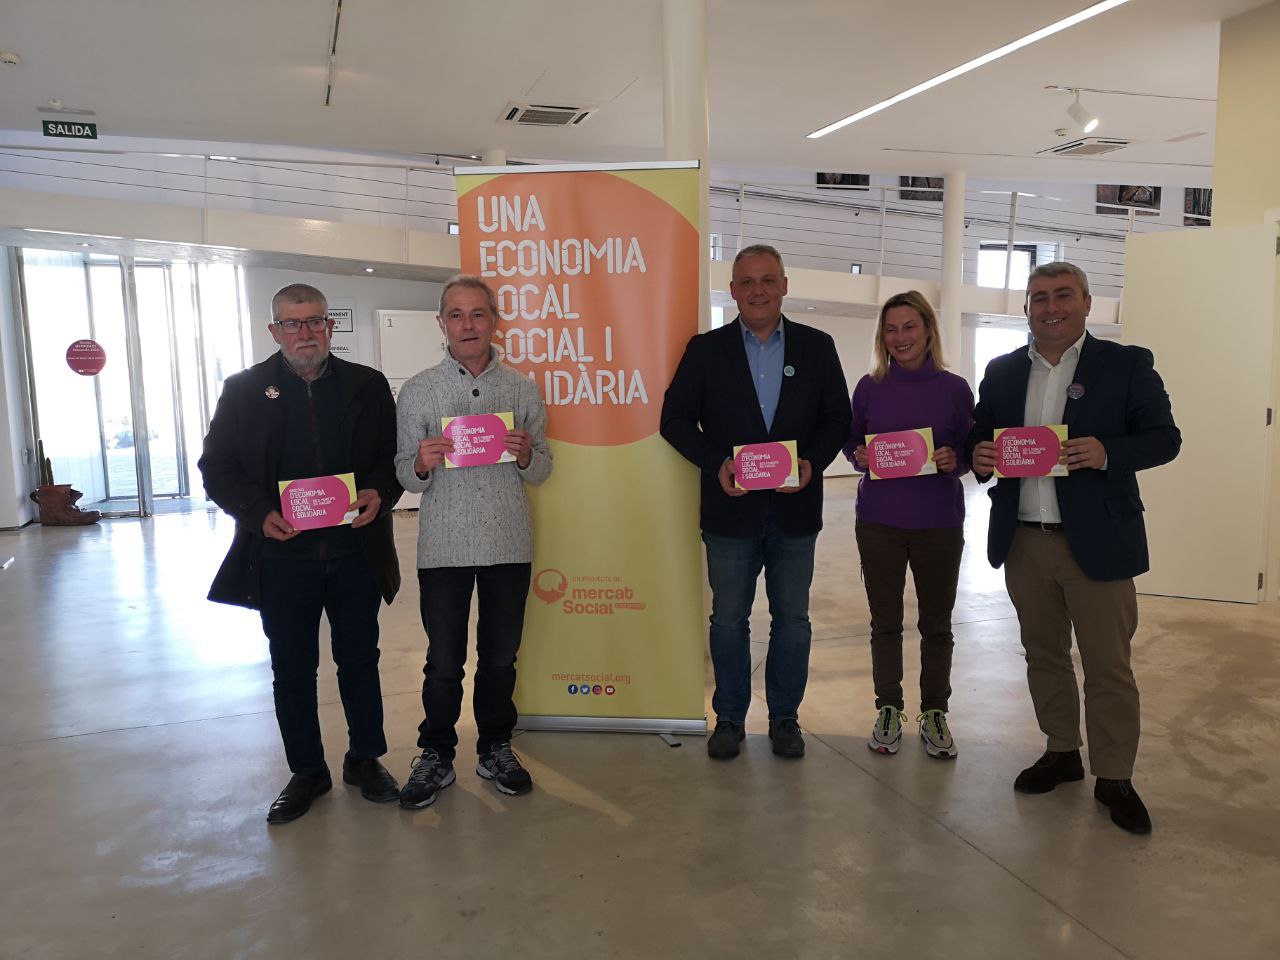 Mercat Social presenta en Inca el catálogo de economía local, social y solidaria de los municipios del Raiguer de Mallorca